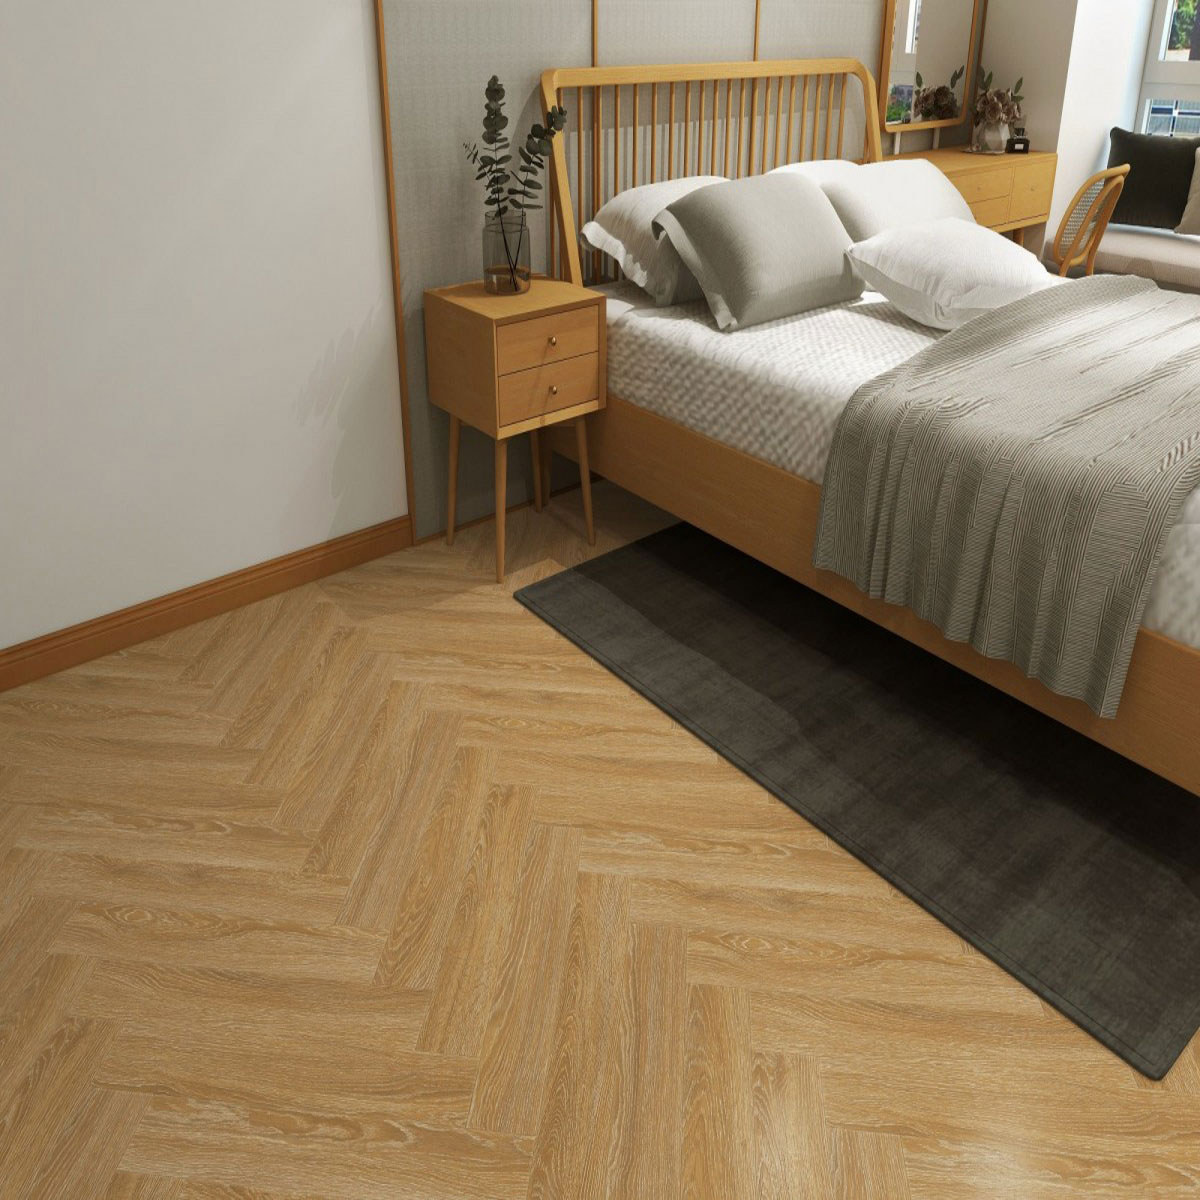 клей для напольного покрытия ideal creative flooring 302 Ламинат Hoi Lock Flooring Shanghai 43 класс Кимун 5x110x610 мм 1.61 кв.м./ 24 шт